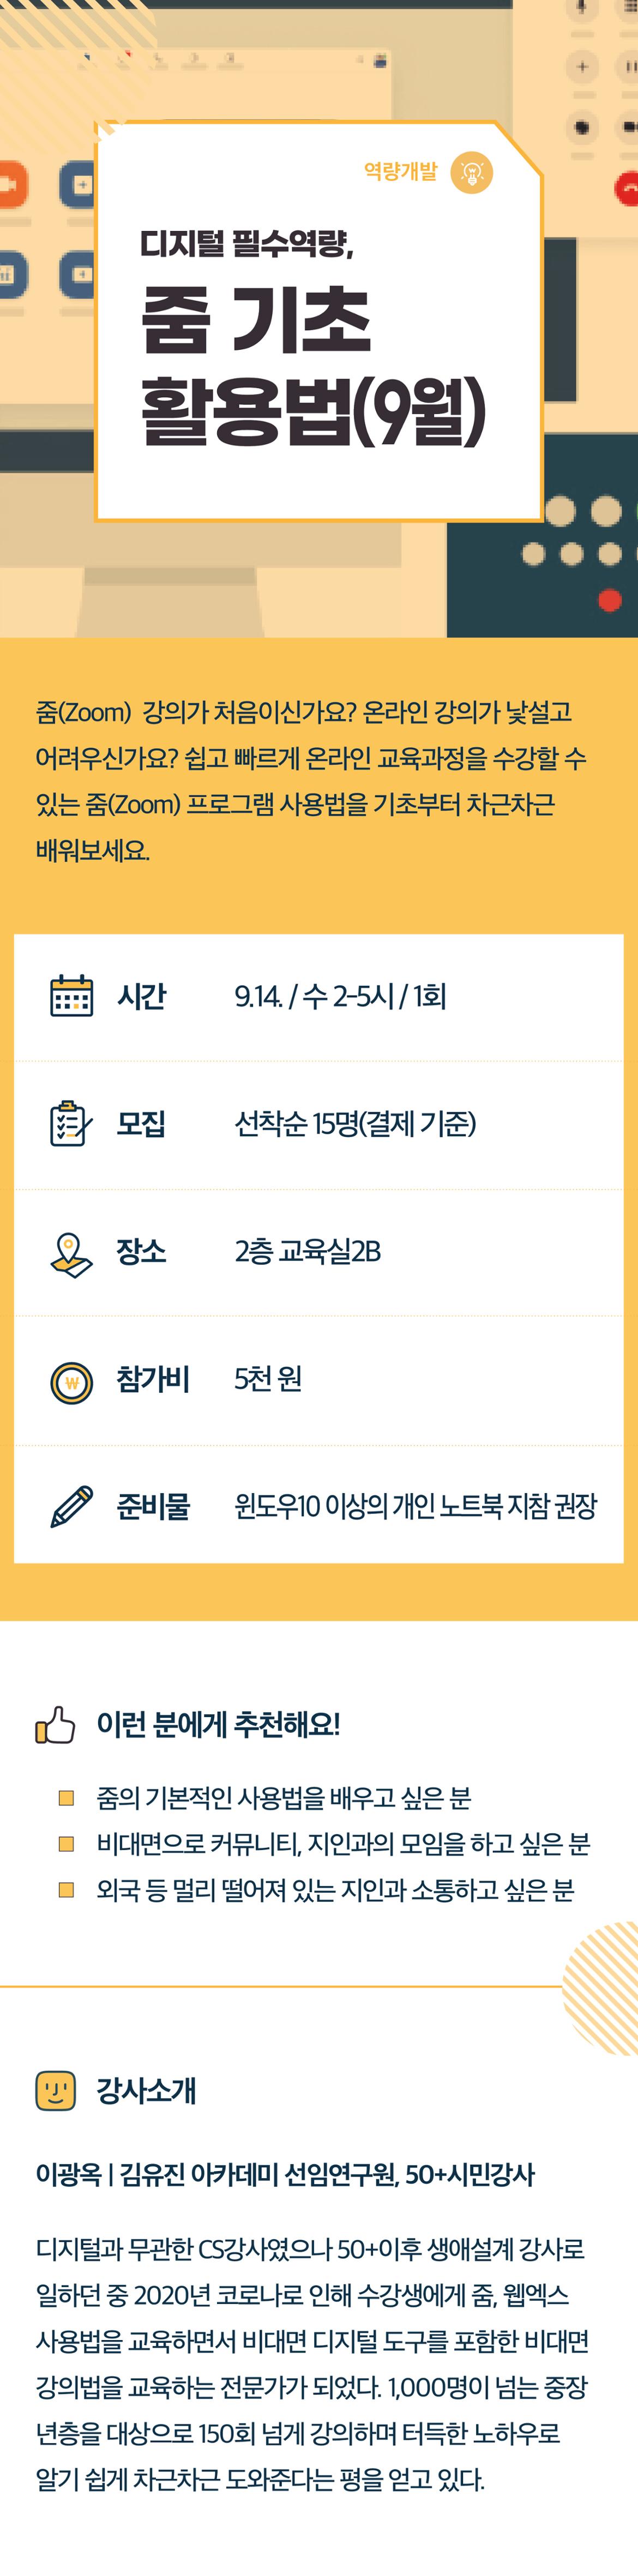 2022서부캠하반기_역량개발10_줌기초(9월)(0719수정).jpg